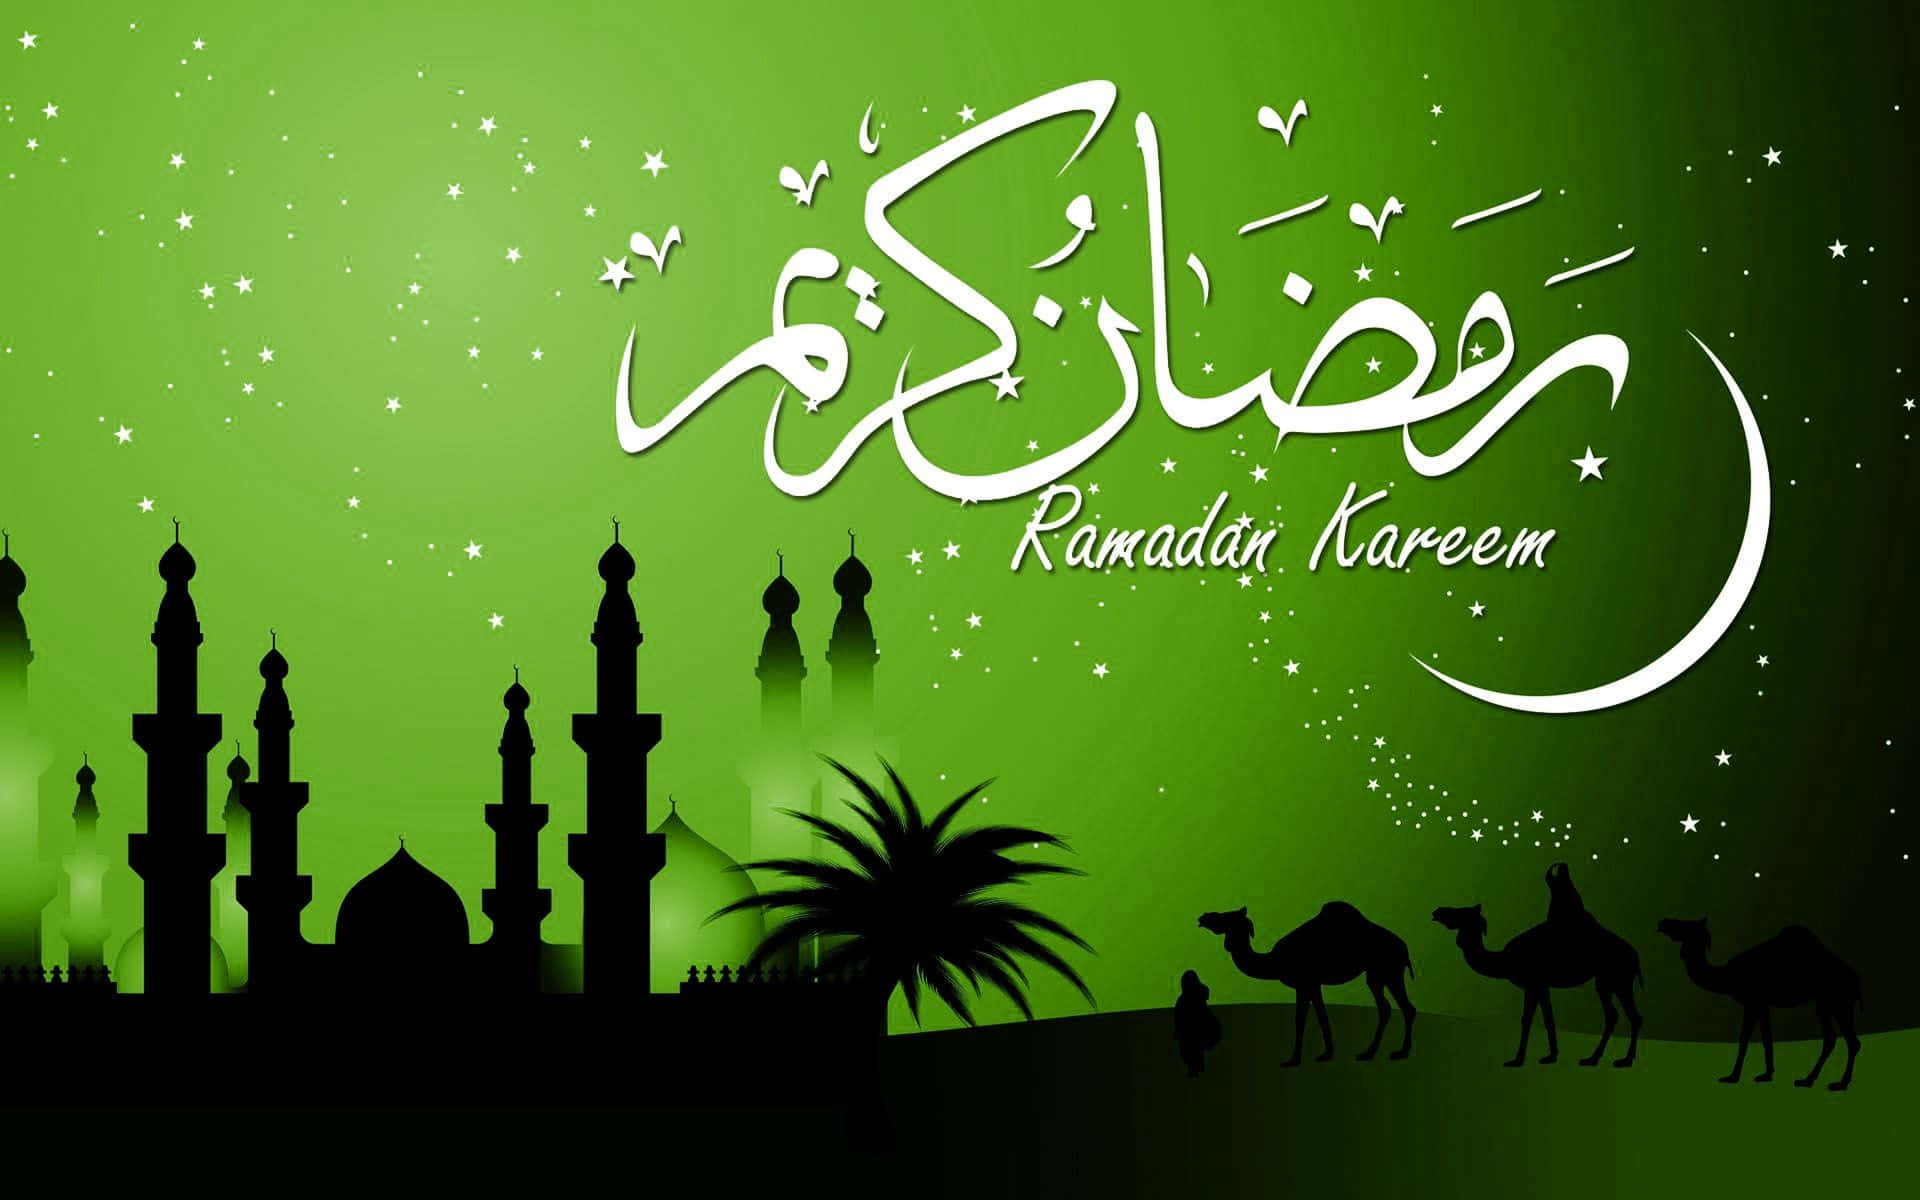 Imagende Ramadan Verde.